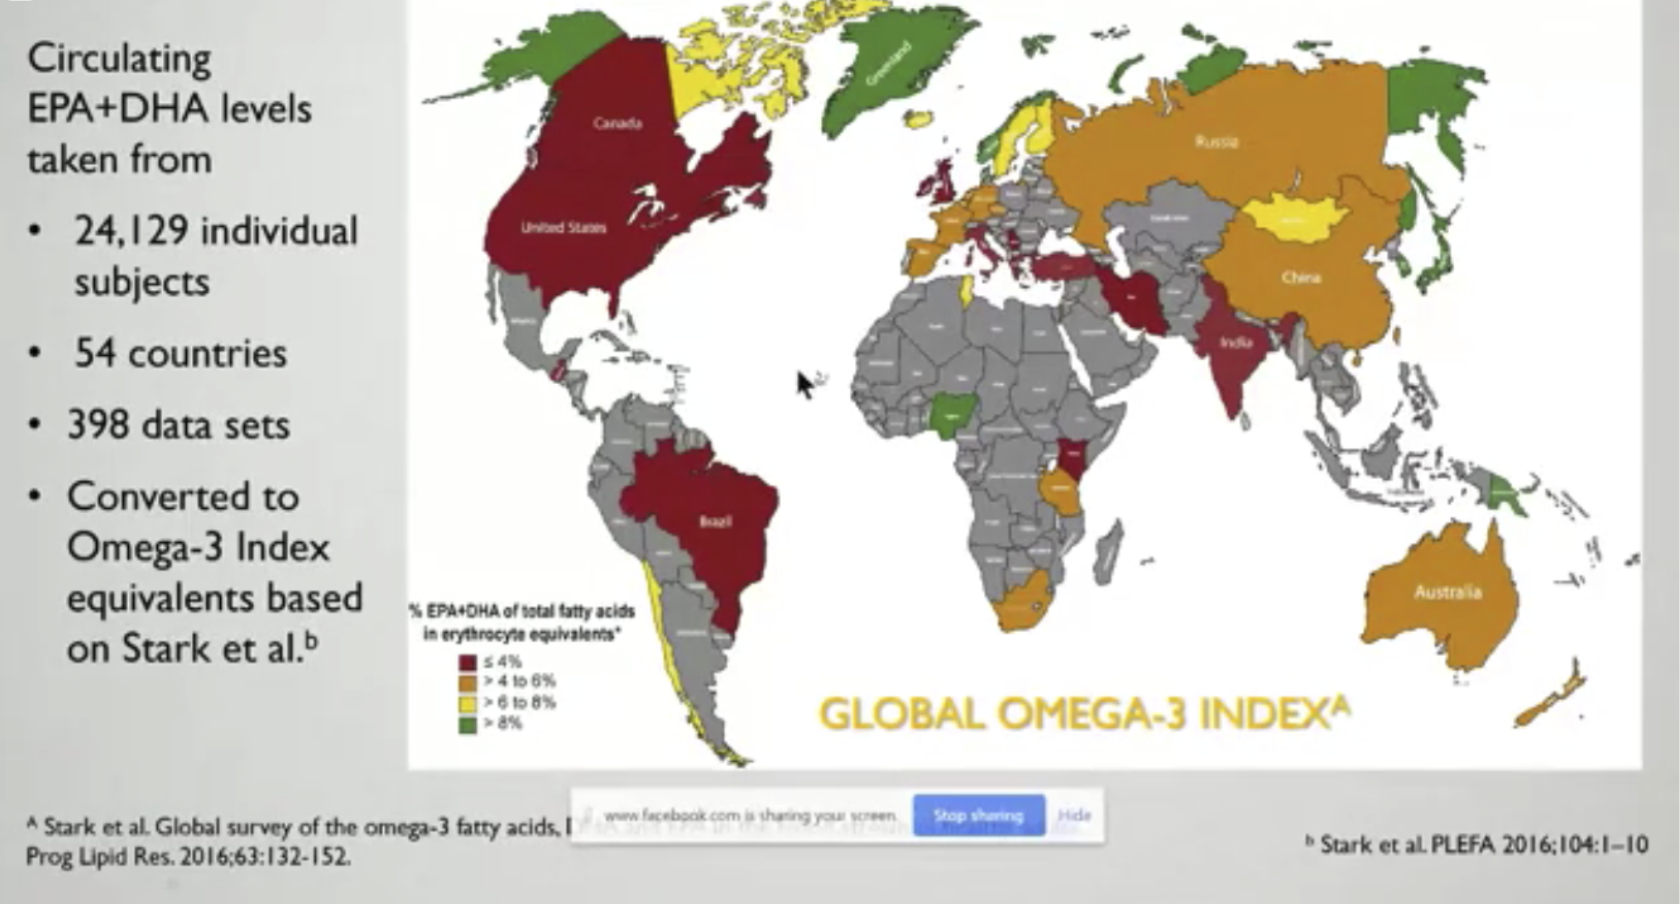 รูปที่ 4 : สีแดง คือ ประเทศที่มีค่า Omega-3 Index เฉลี่ย 0-3%